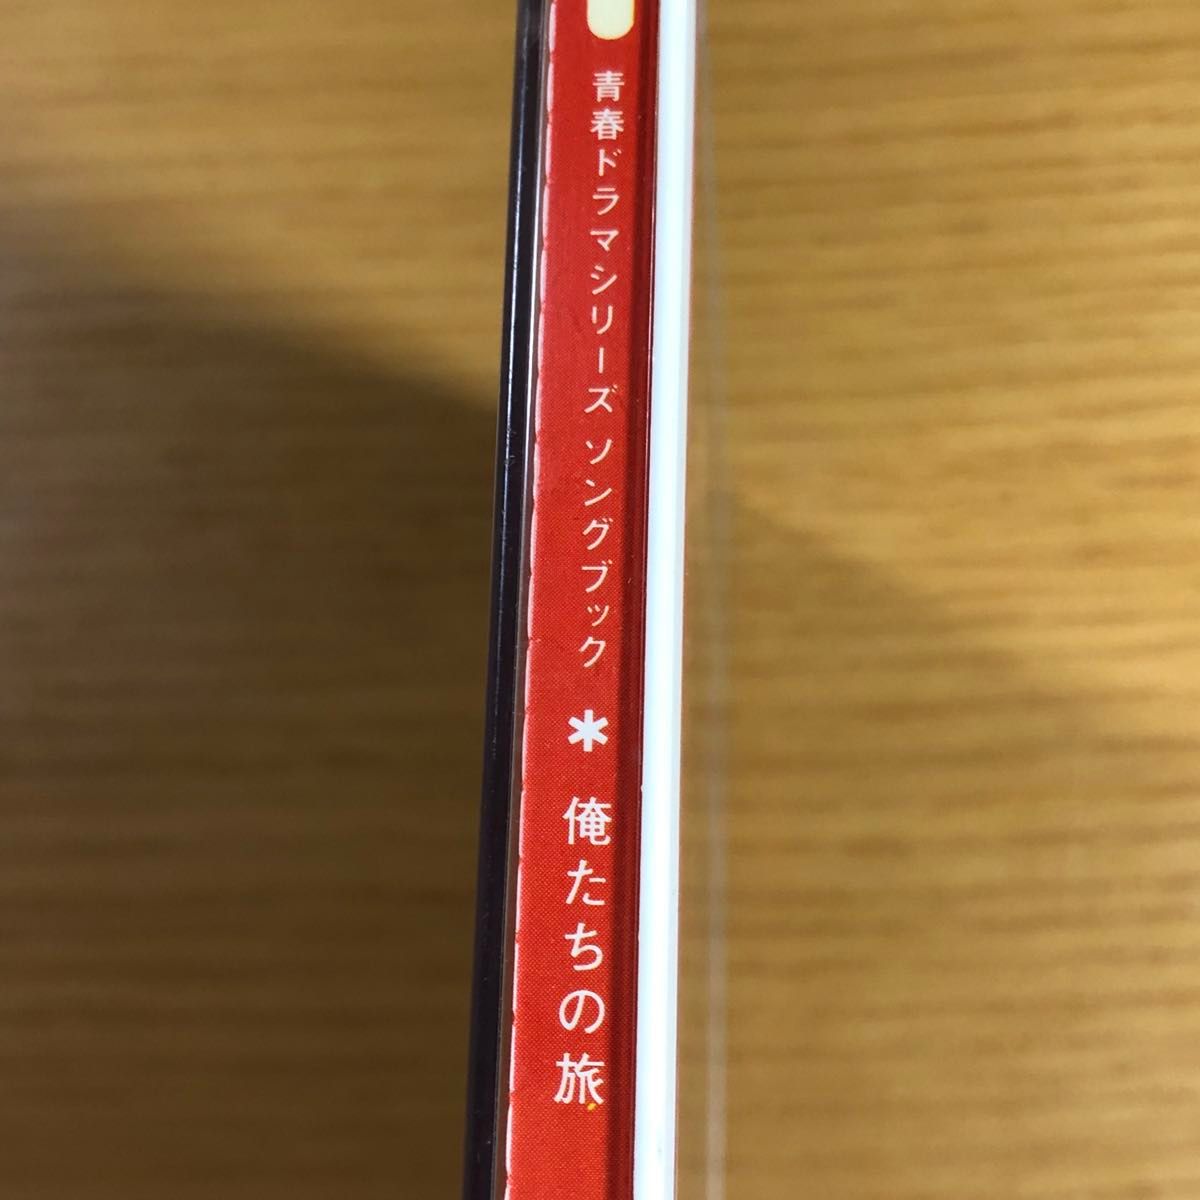 【レトロCD】青春ドラマシリーズ ソングブック 俺たちな旅 サウンドトラック 中村雅俊 CD アルバム